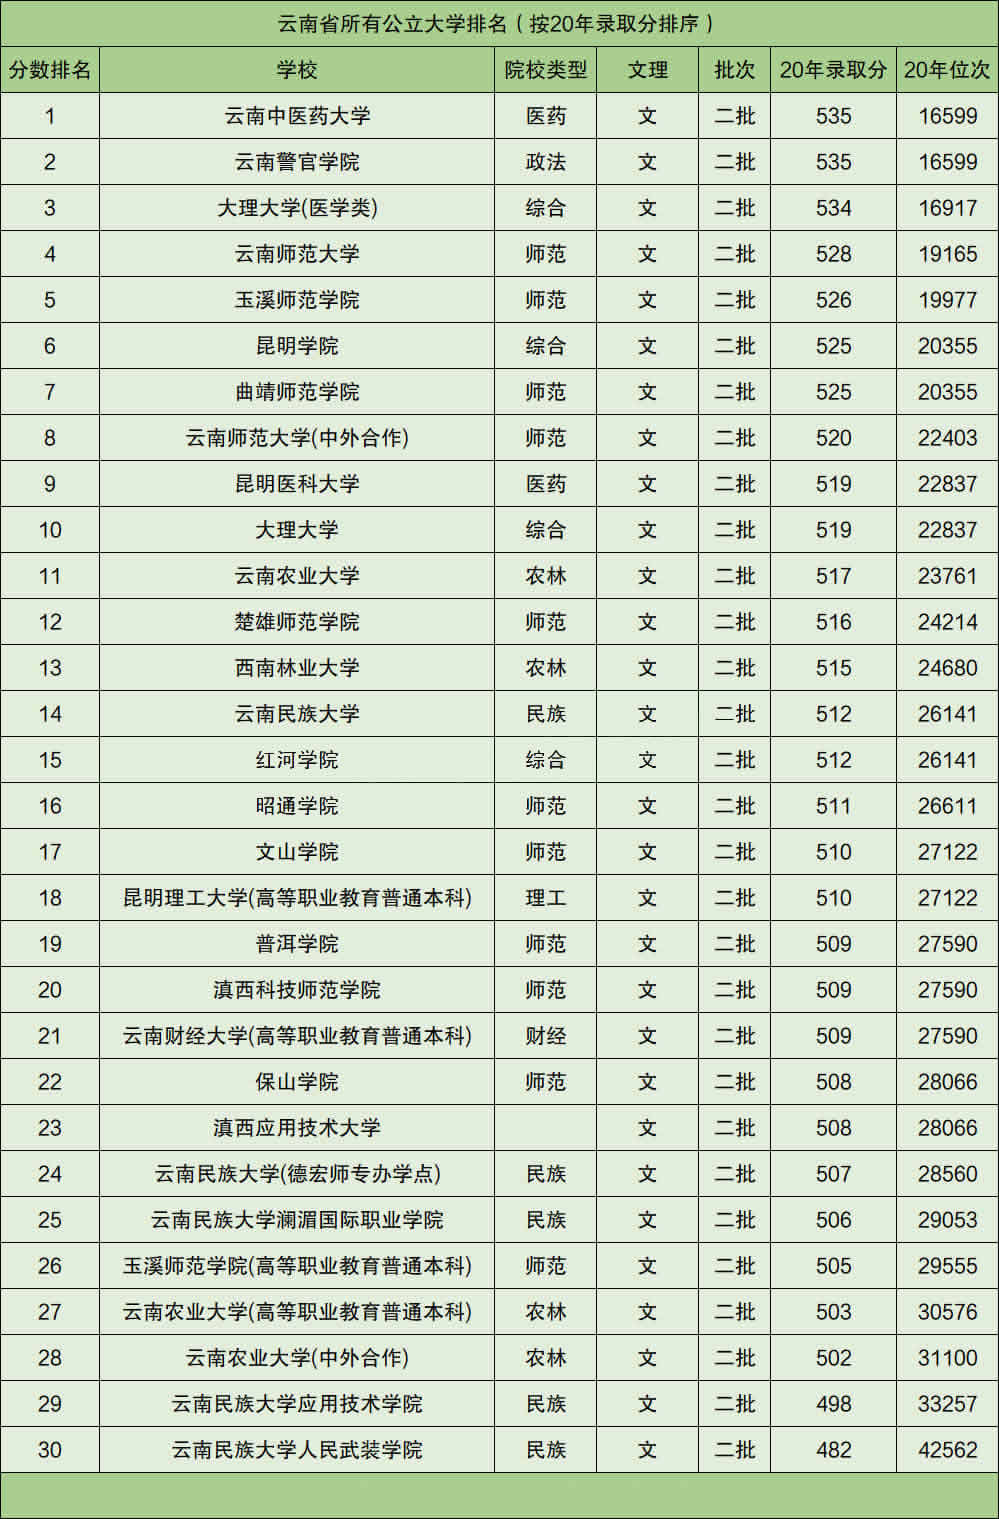 2、中国最发达的省份排名:中国省份十大区域富裕排行？